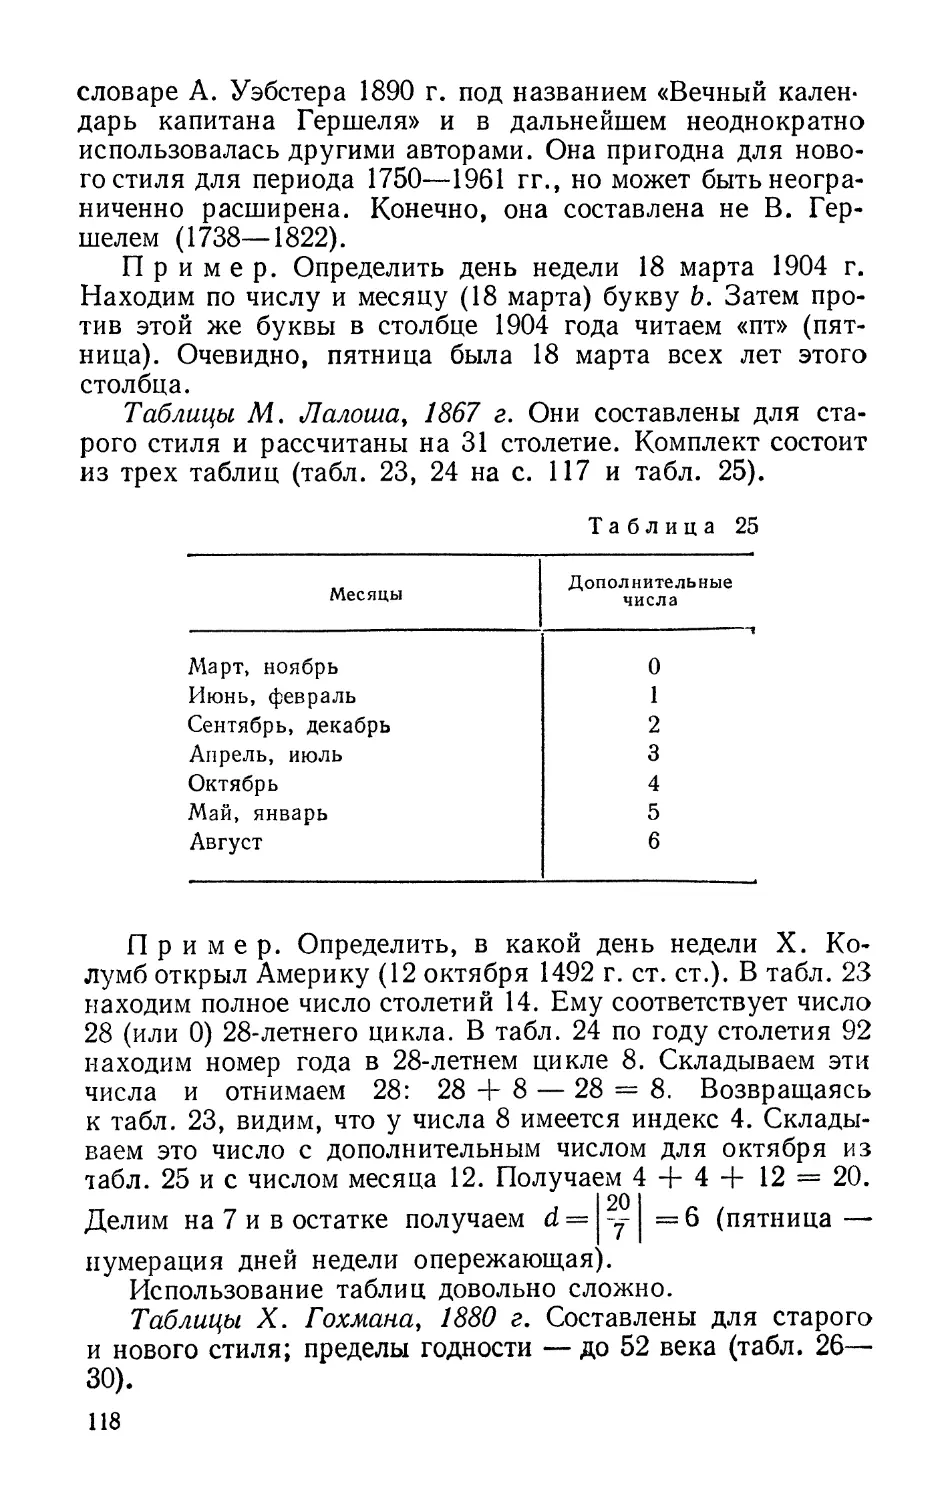 Таблицы М. Лалоша, 1867 г.
Таблицы X. Гохмана, 1880 г.